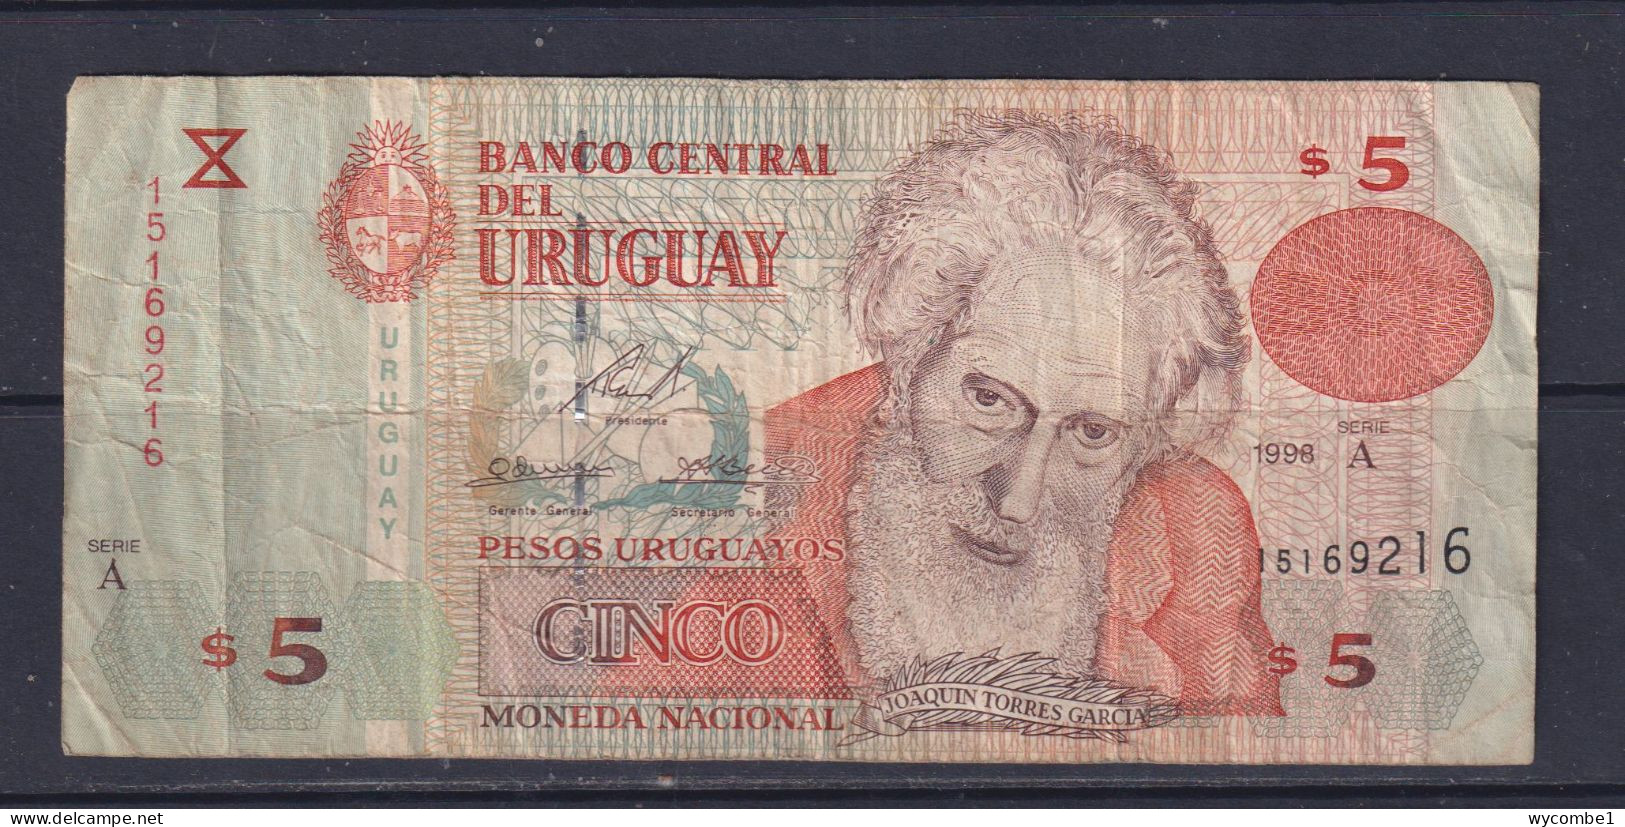 URUGUAY - 1998 5 Pesos Circulated Banknote - Uruguay